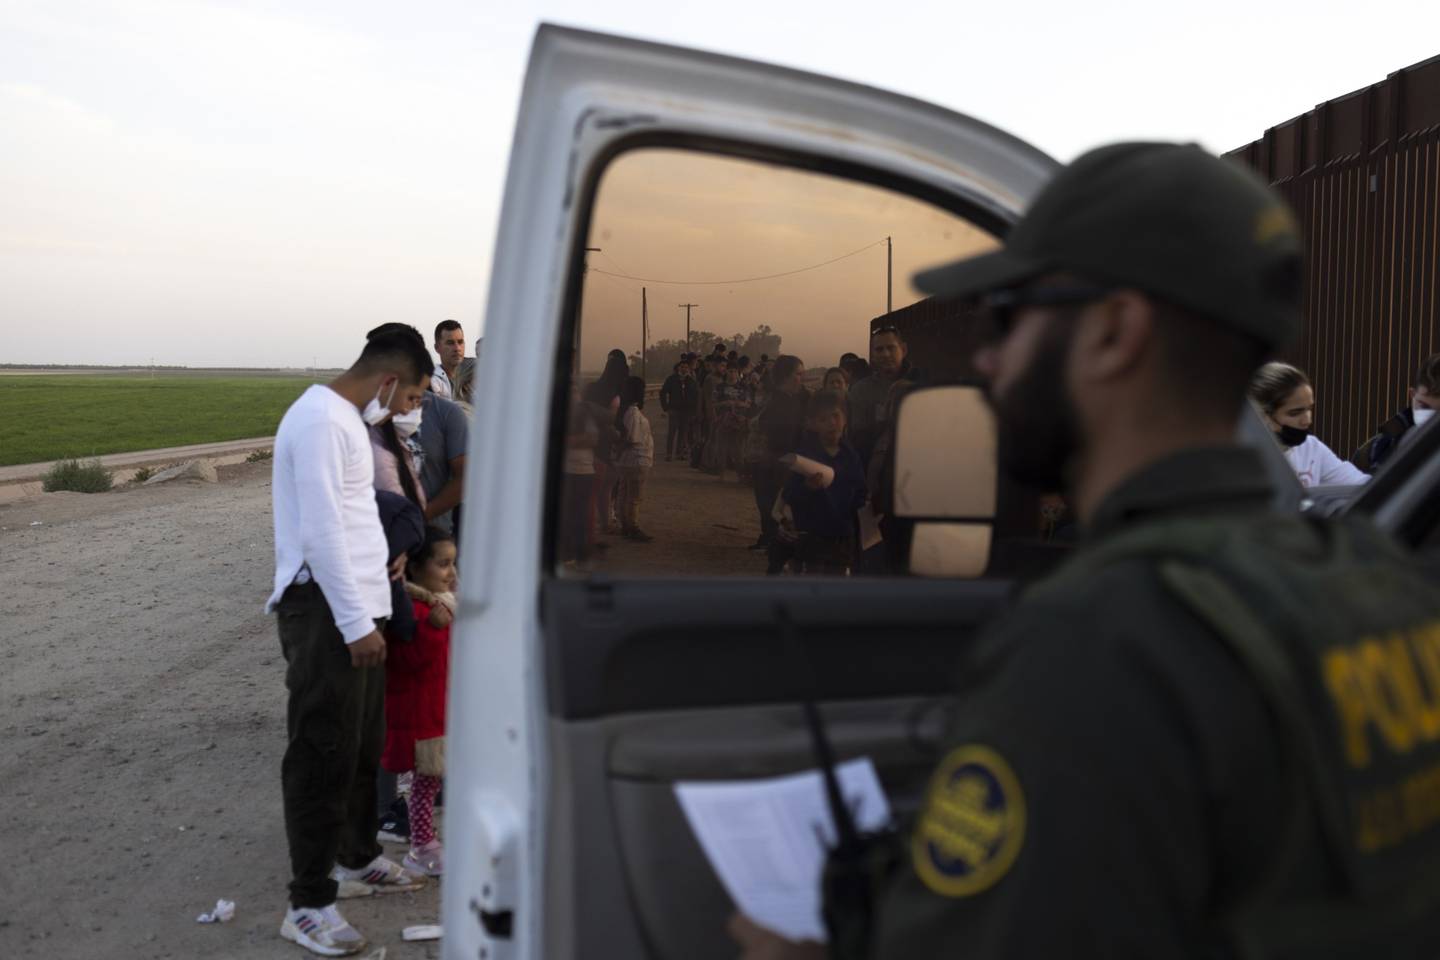 Migrantes en busca de asilo esperan a ser procesados por agentes de la Patrulla Fronteriza de Estados Unidos después de cruzar la frontera entre México y Estados Unidos en Yuma, Arizona.dfd